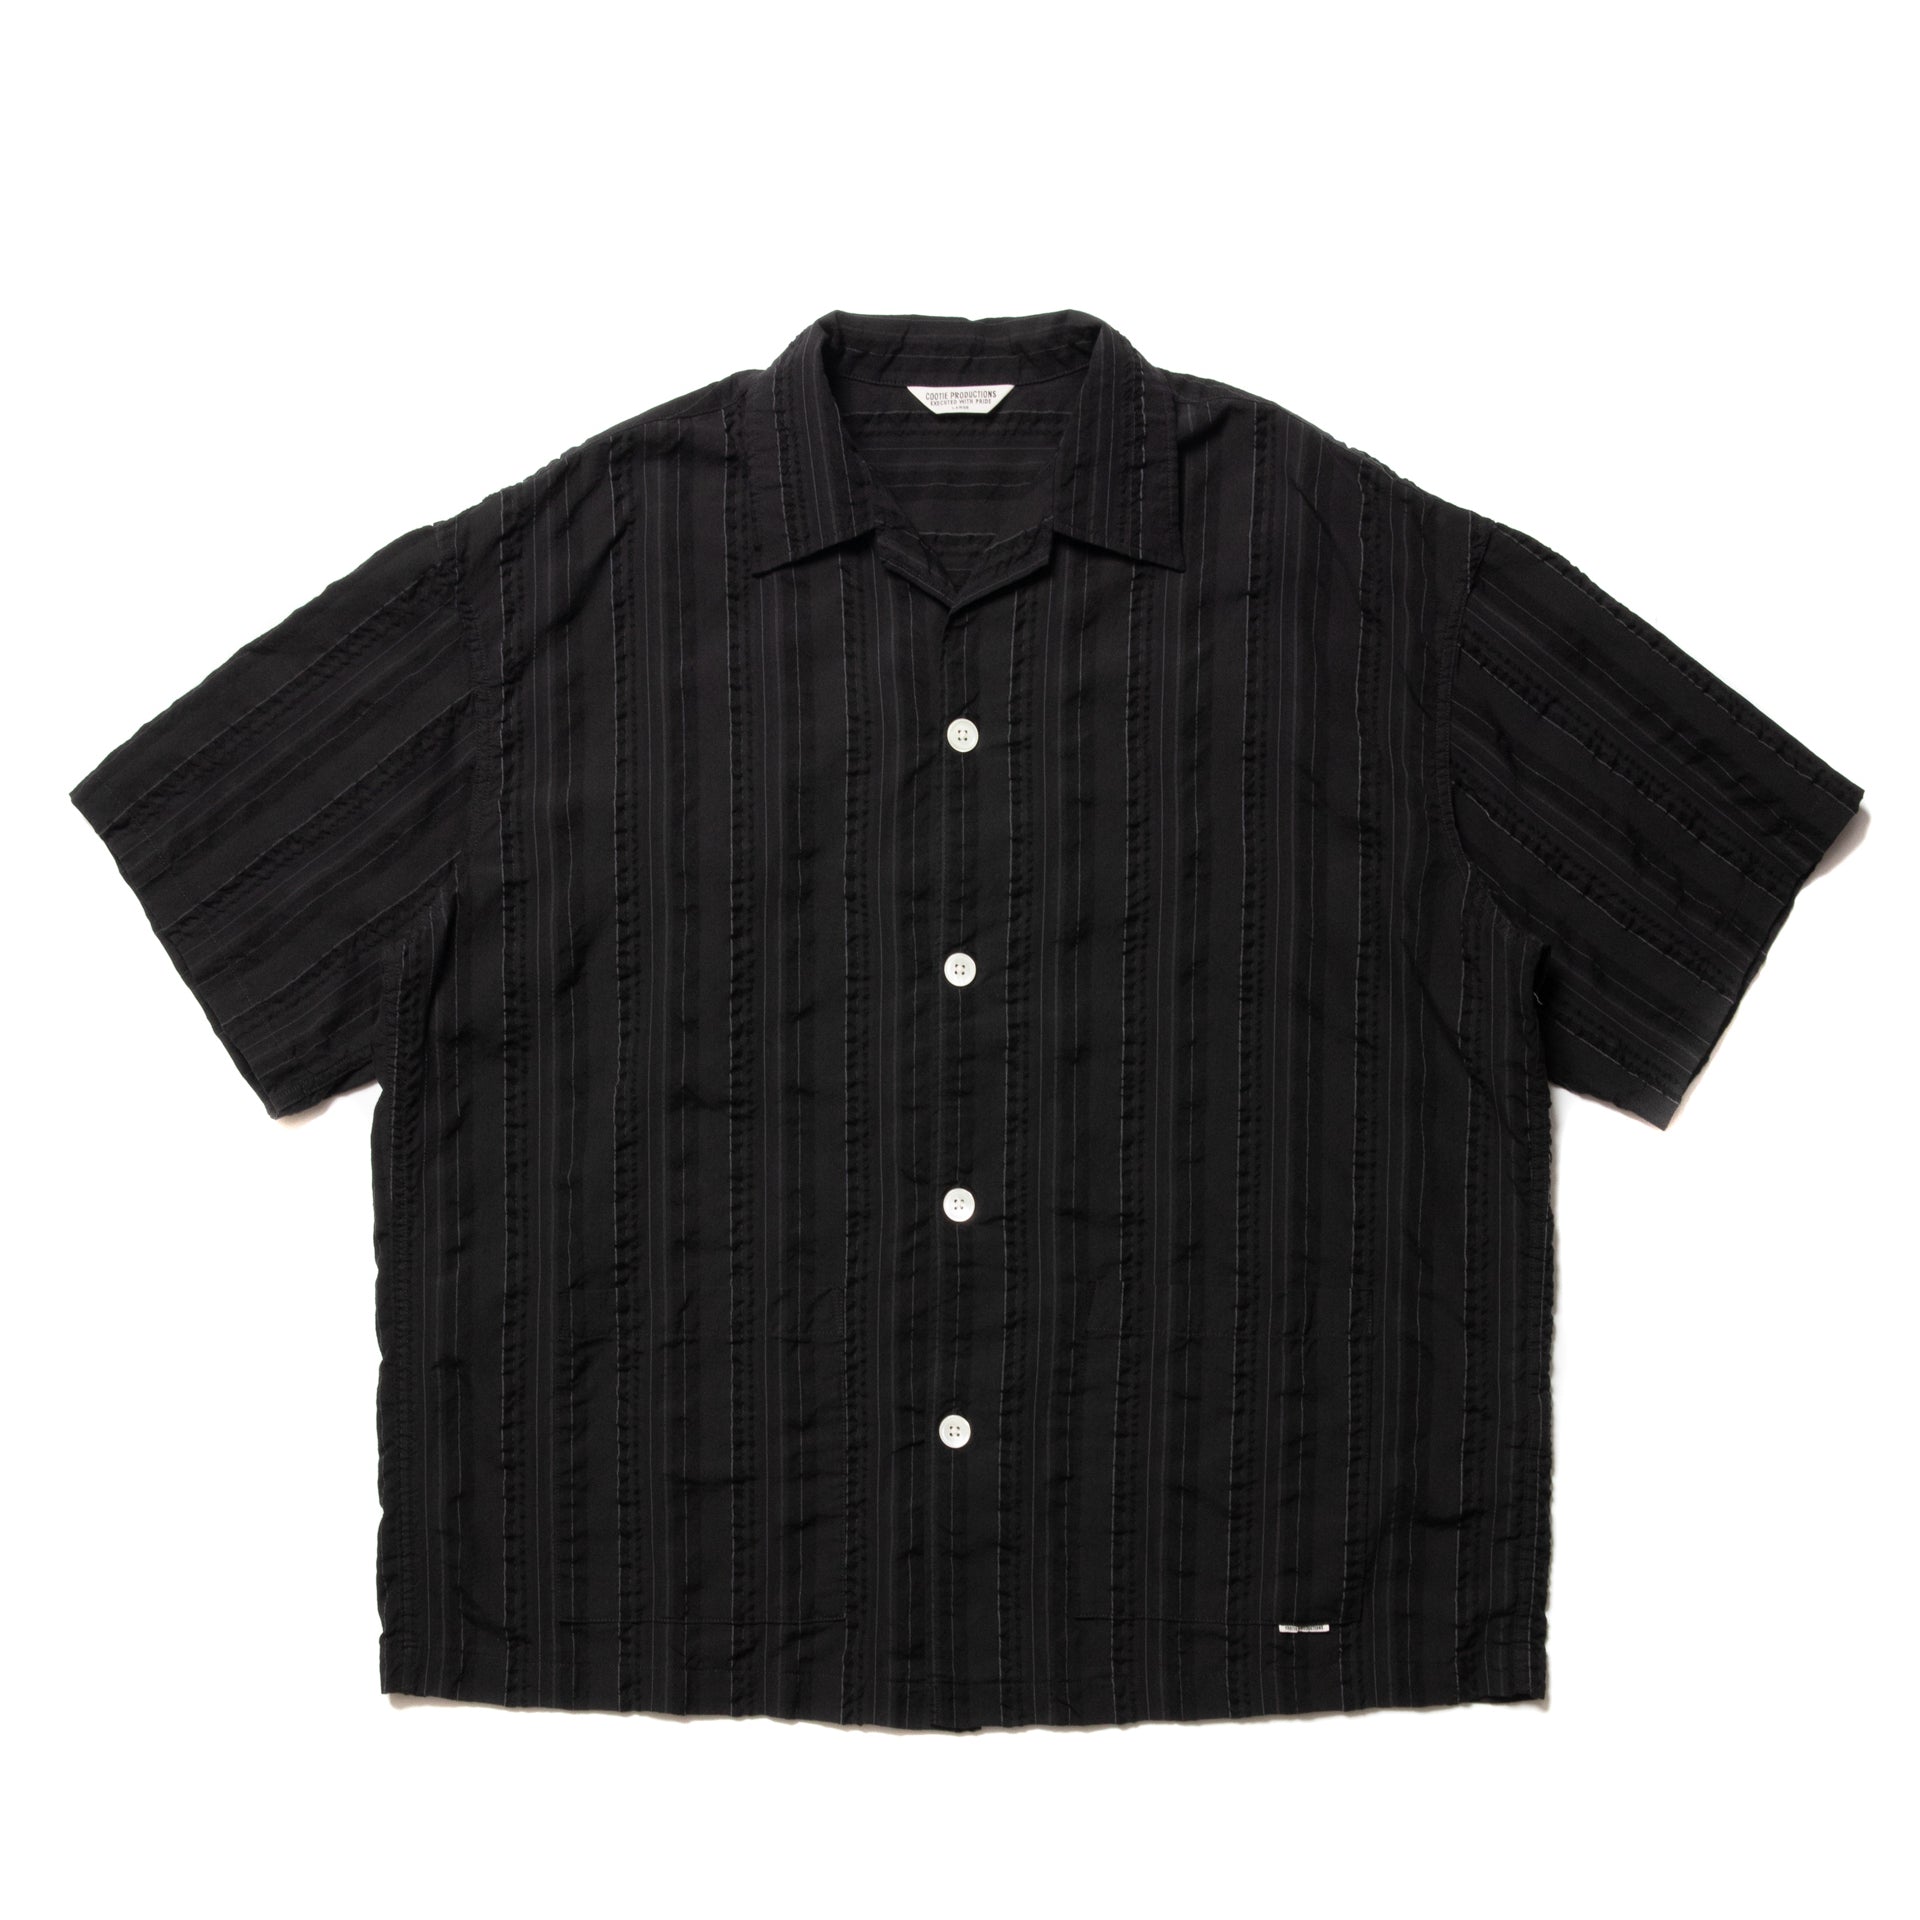 COOTIE(クーティー) / Stripe Sucker Cloth Open Collar S/S Shirt (Black)